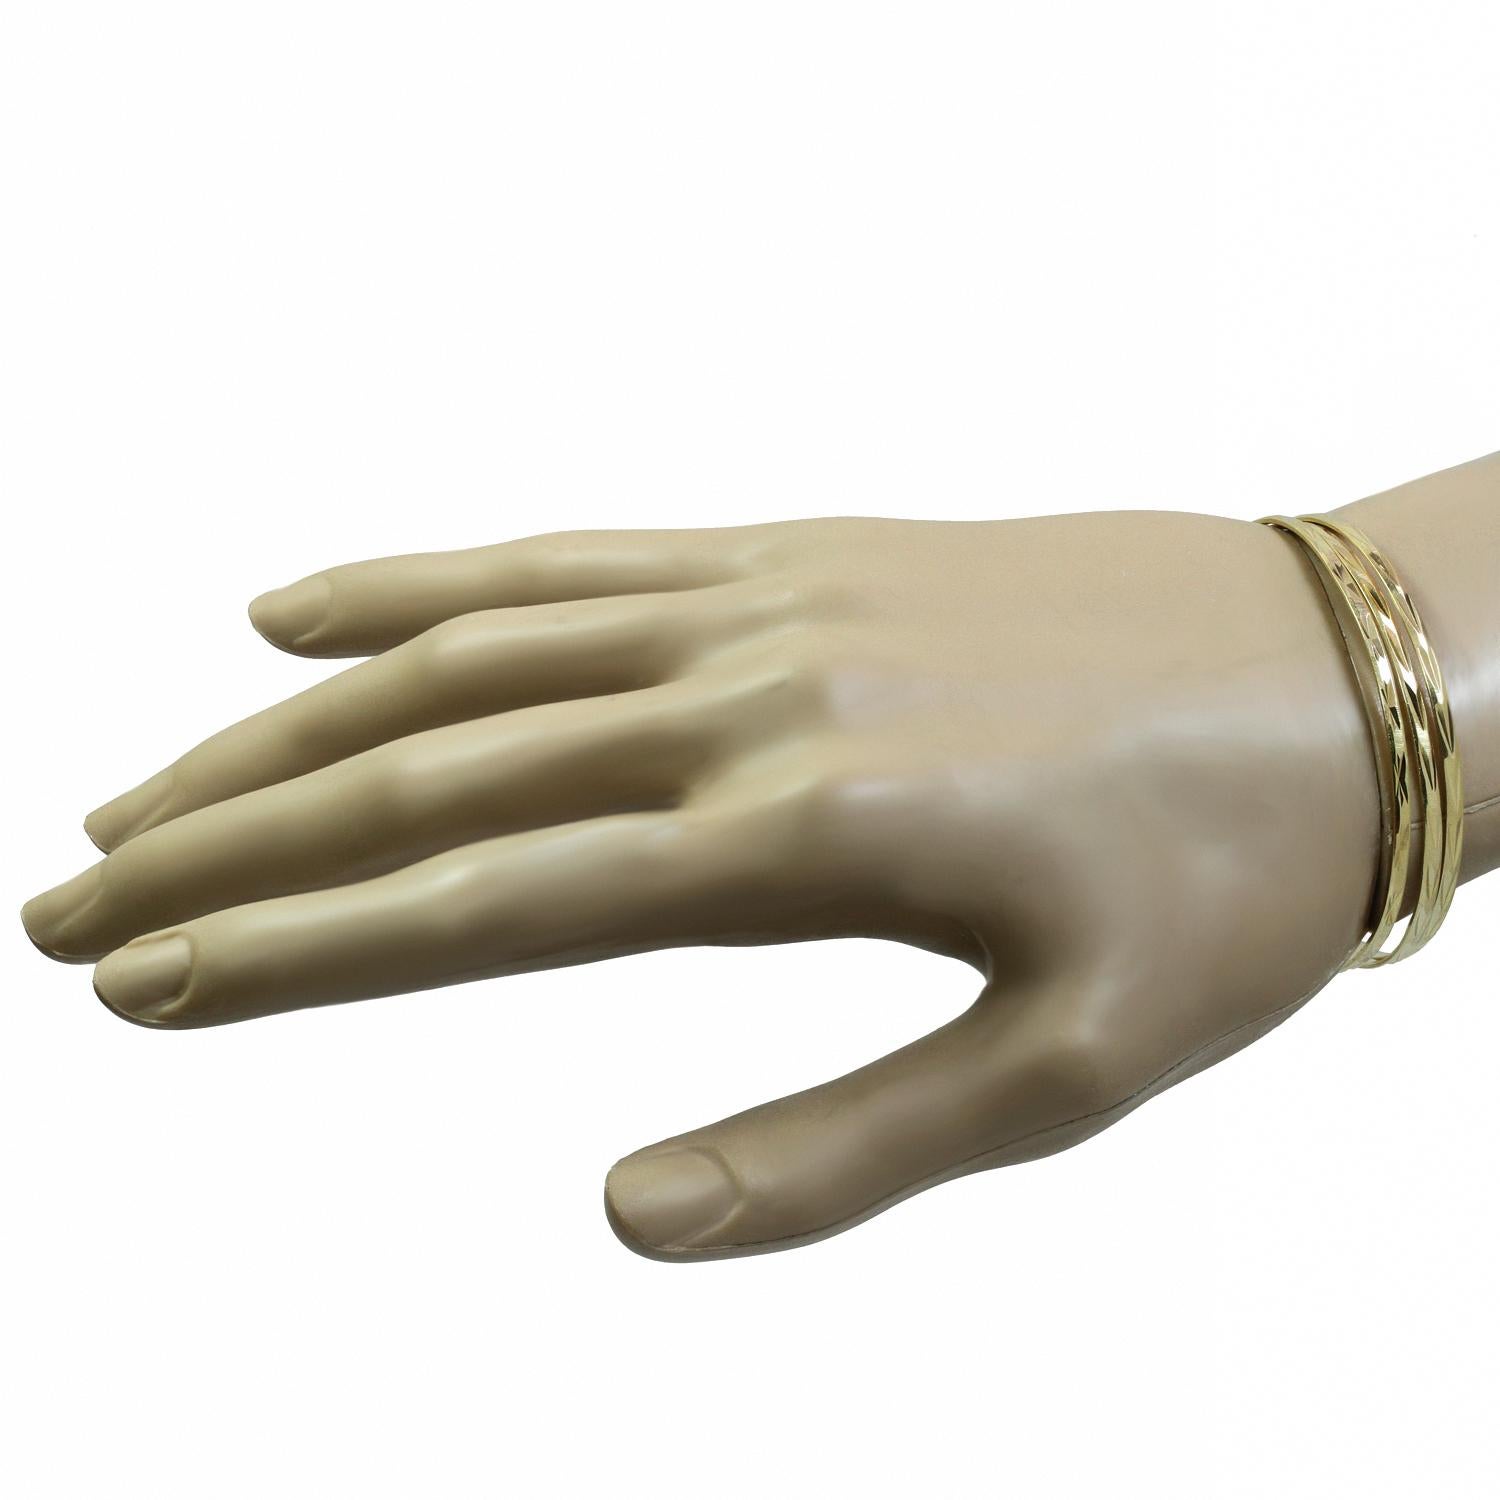 Ce tout nouveau set de 3 bracelets bébé classiques de 2,0 mm est fabriqué en or jaune massif 14k et présente une texture taillée en diamant. Ces bracelets mesurent de 4,5 à 5 pouces de diamètre. Fabriqué aux États-Unis vers les années 2000.